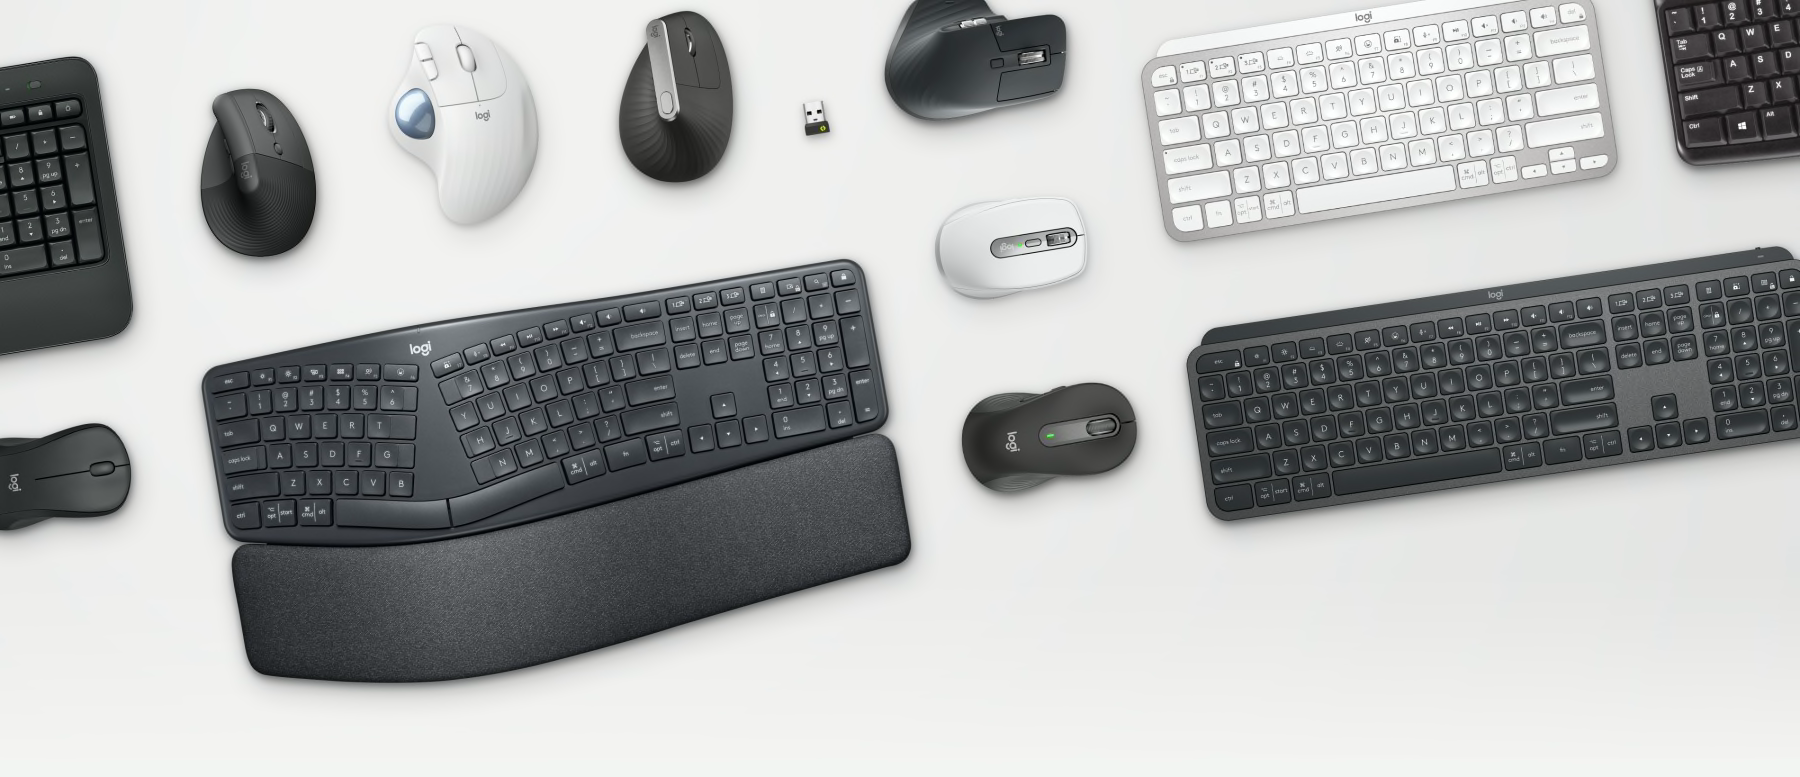 商业工具 - Ergo 鼠标和键盘在桌上